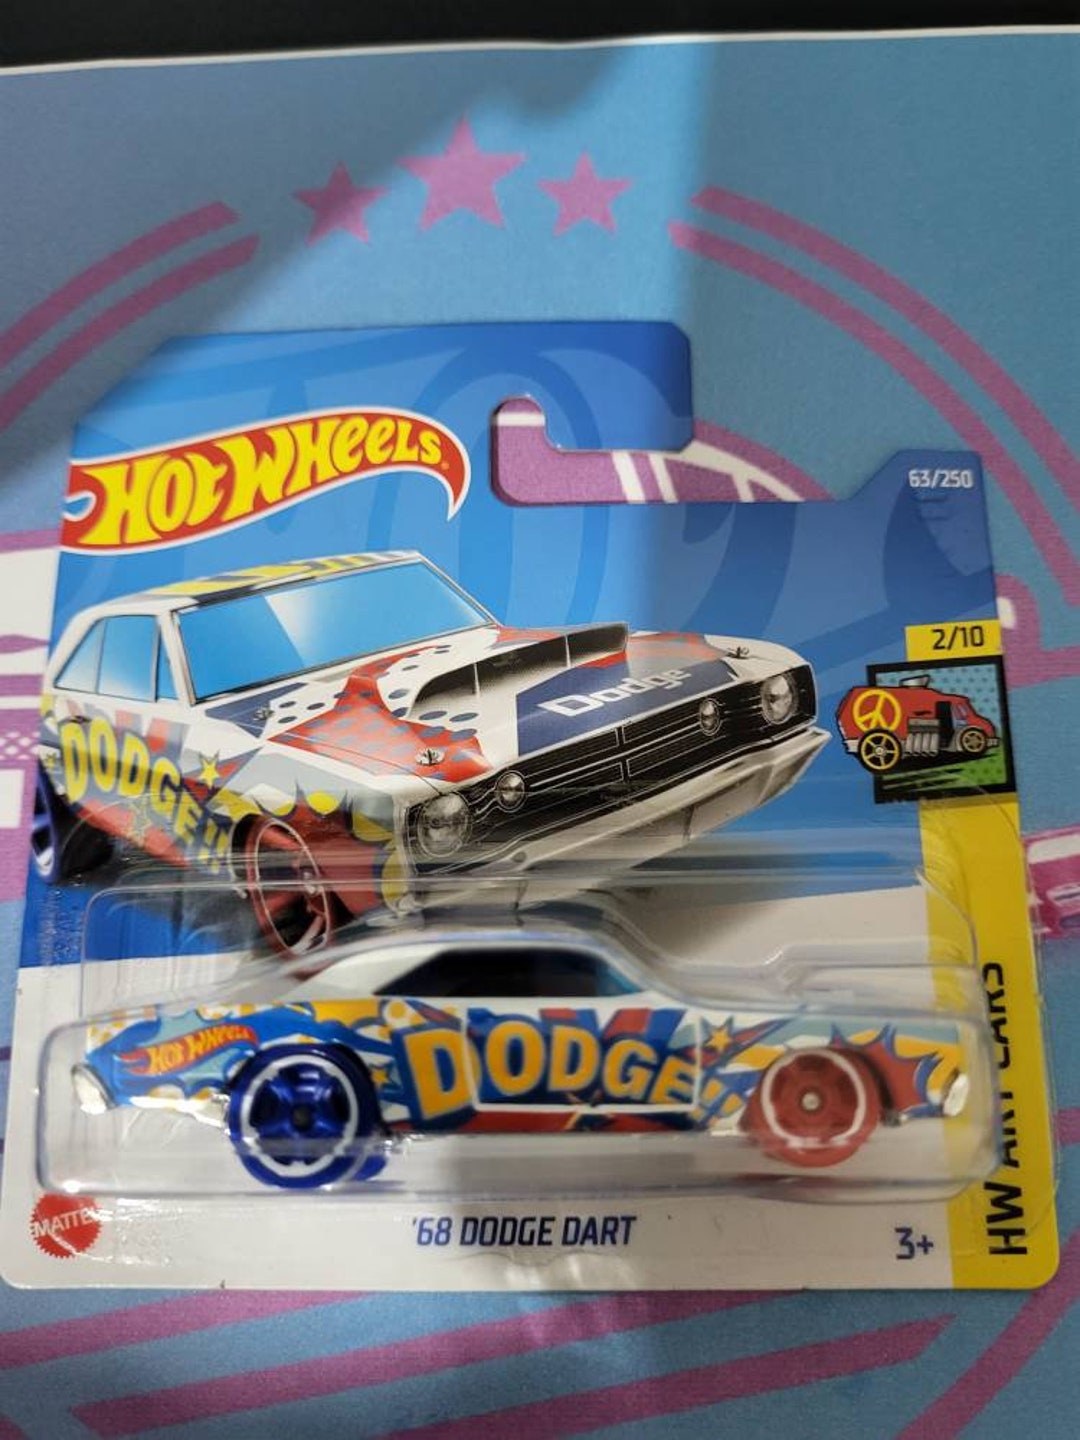 Hotwheels 68 Dodge Dart